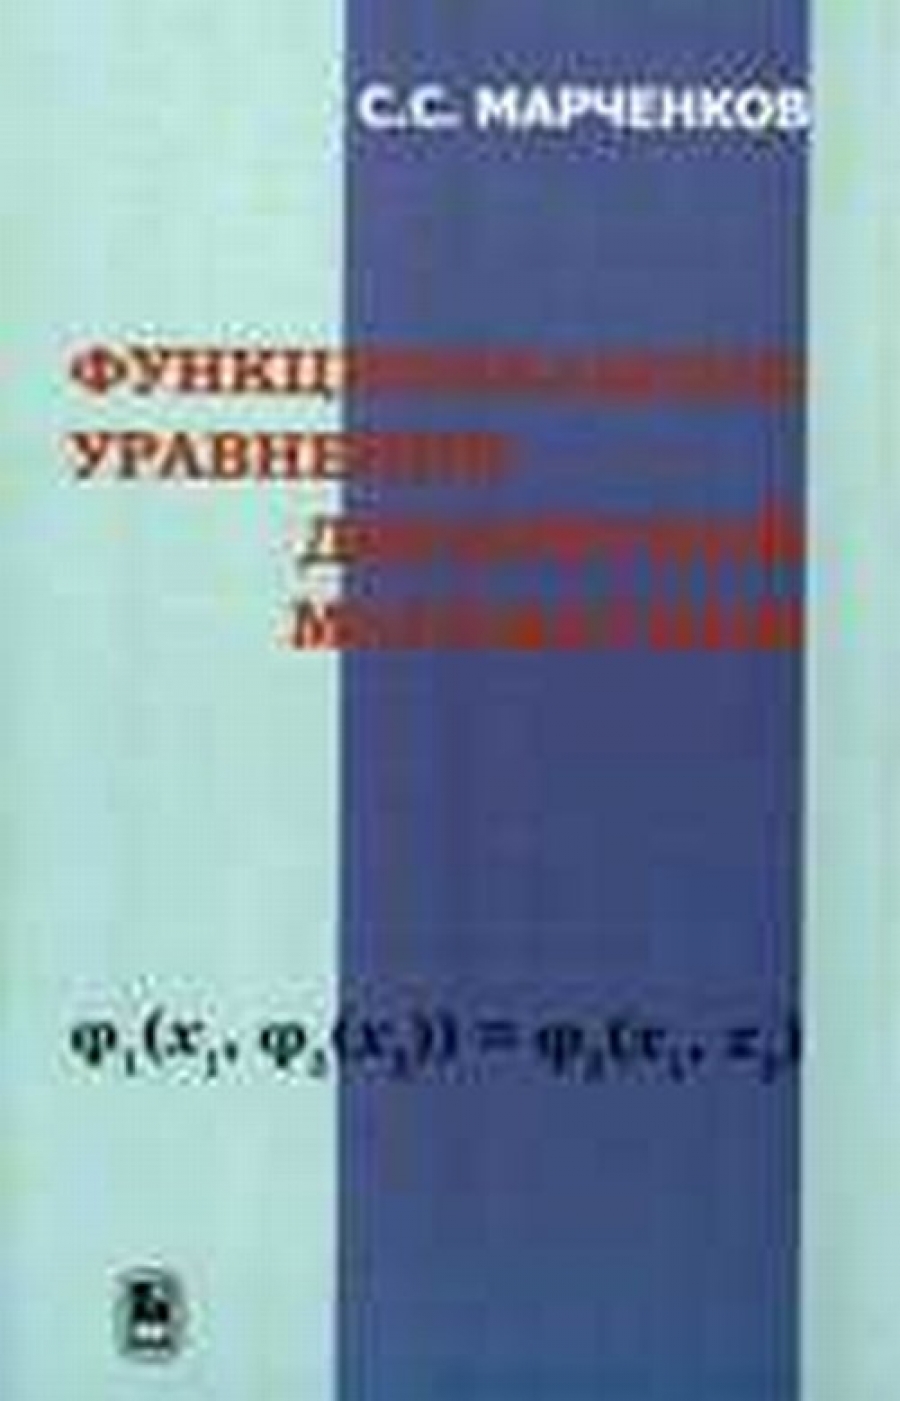 Марченков С.С. Функциональные уравнения дискретной математики 